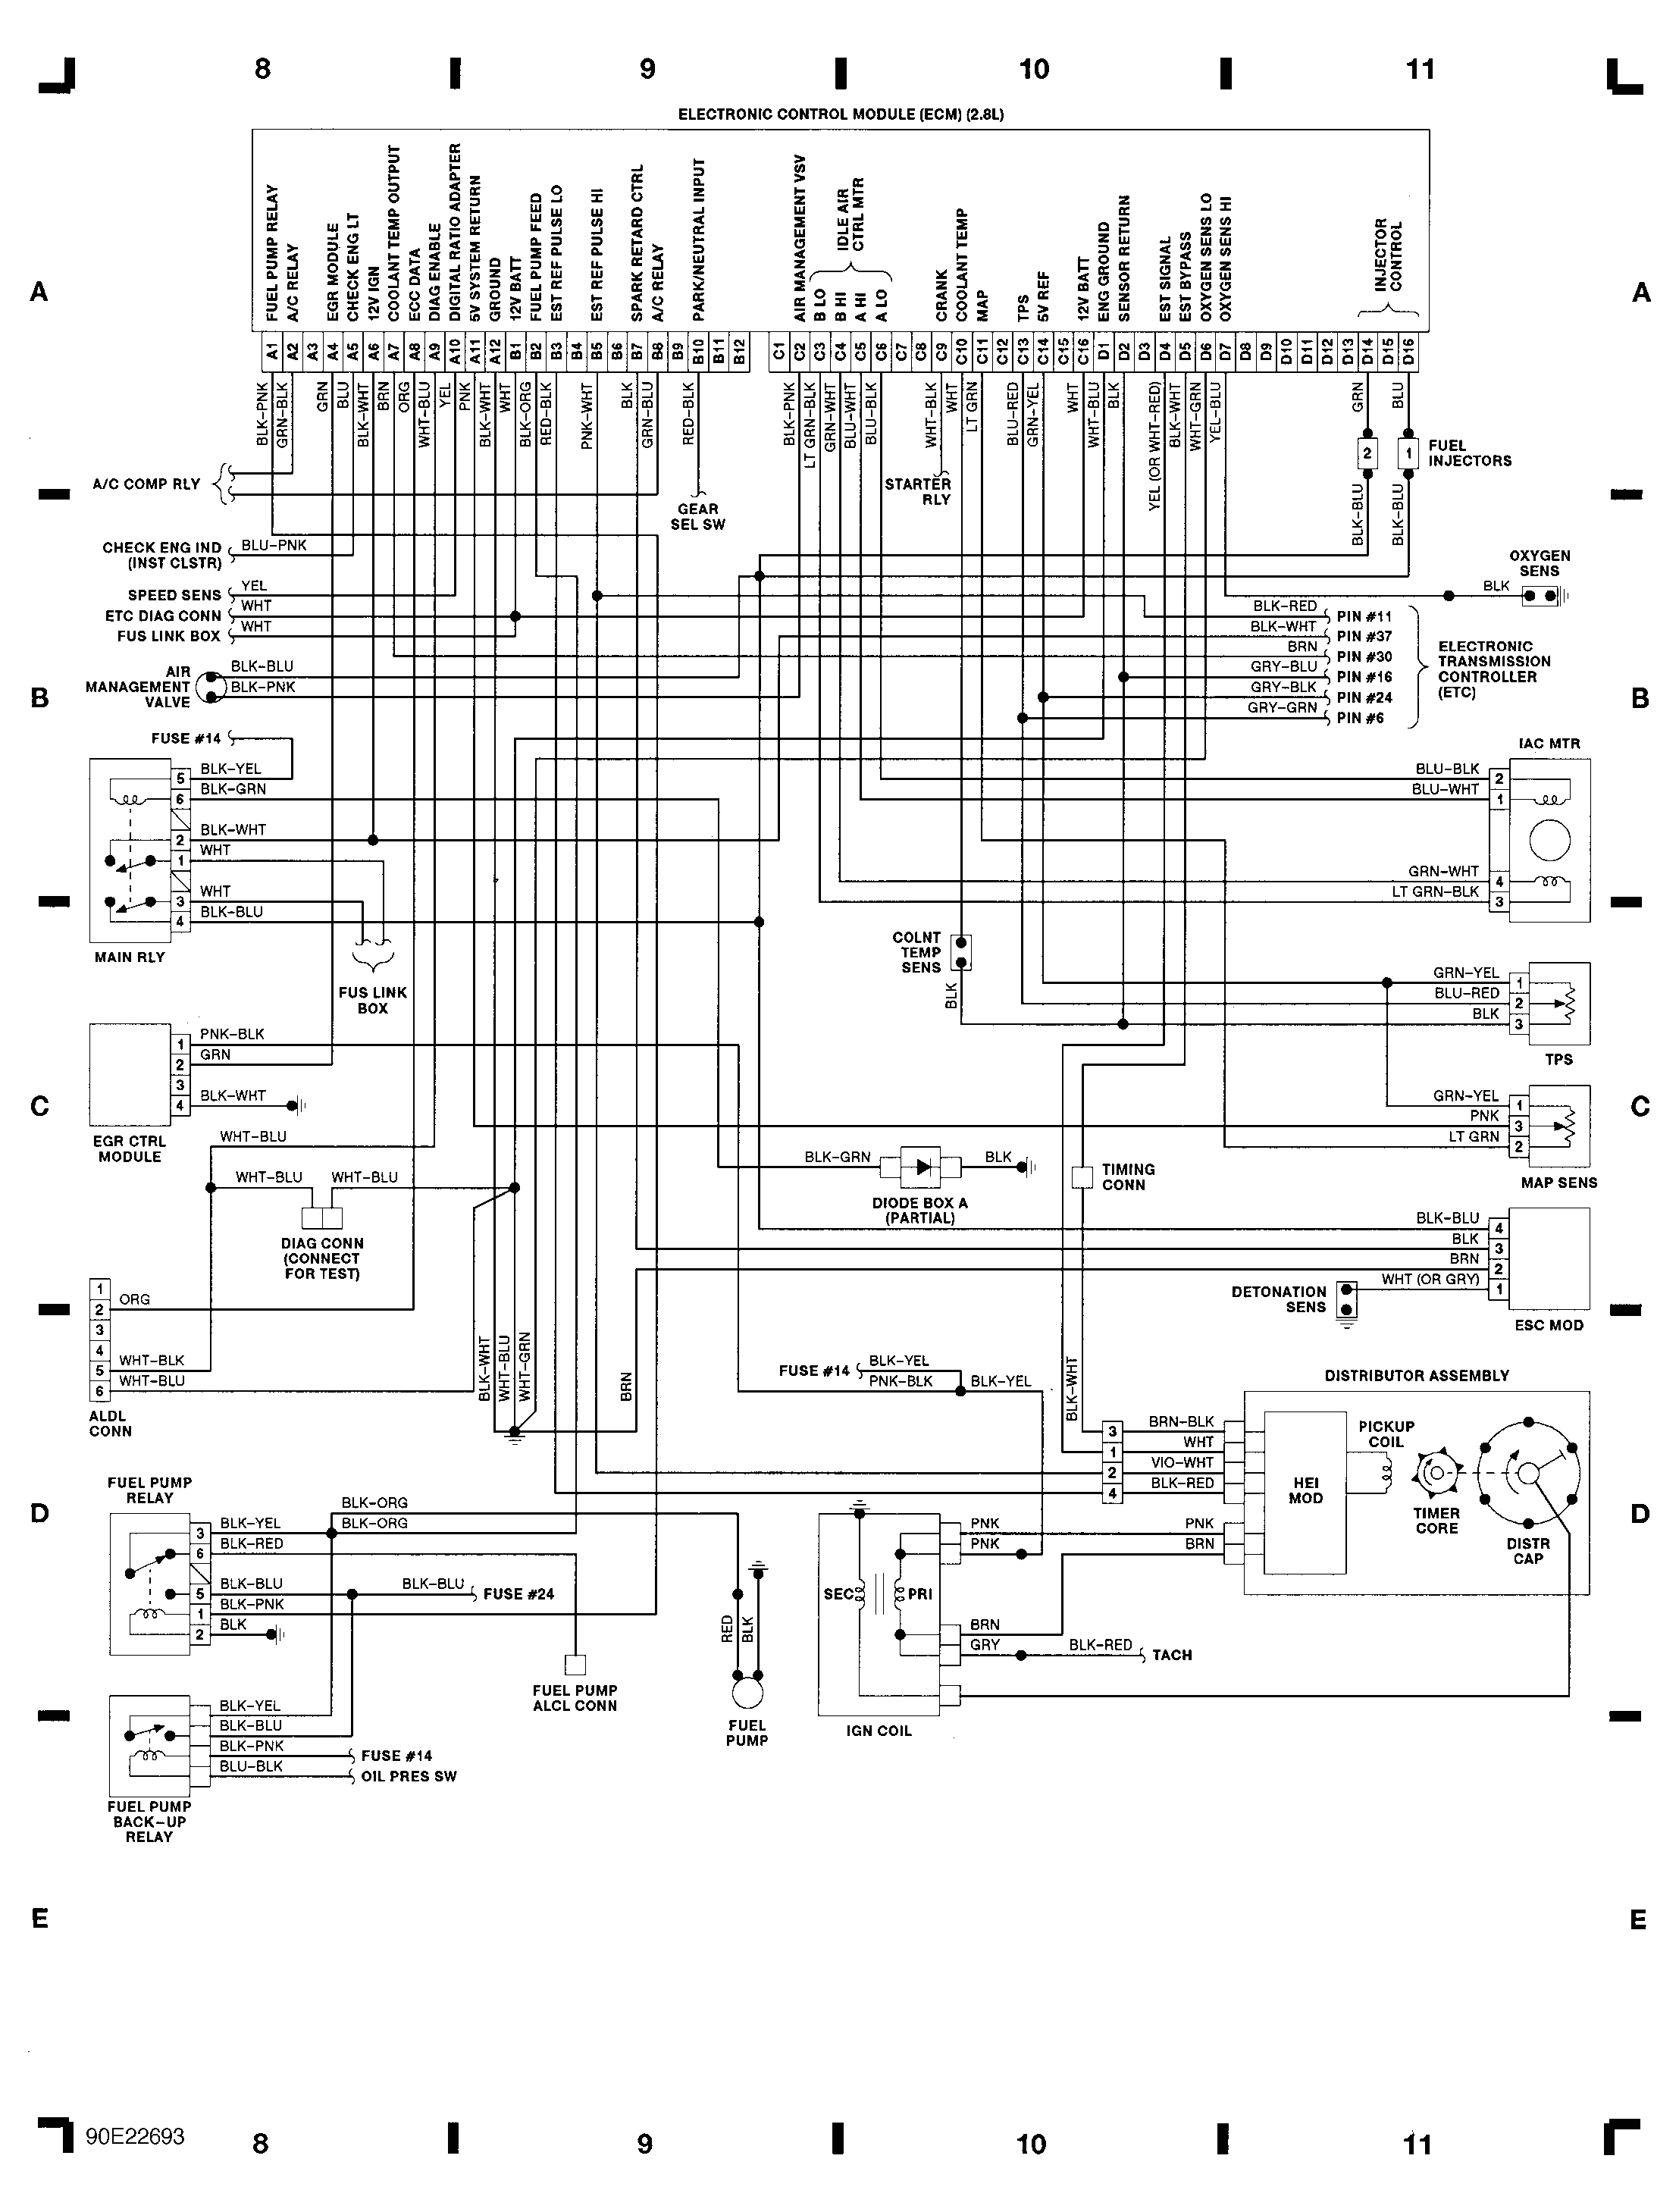 isuzu ignition wiring wiring diagram isuzu npr ignition wiring isuzu ignition wiring